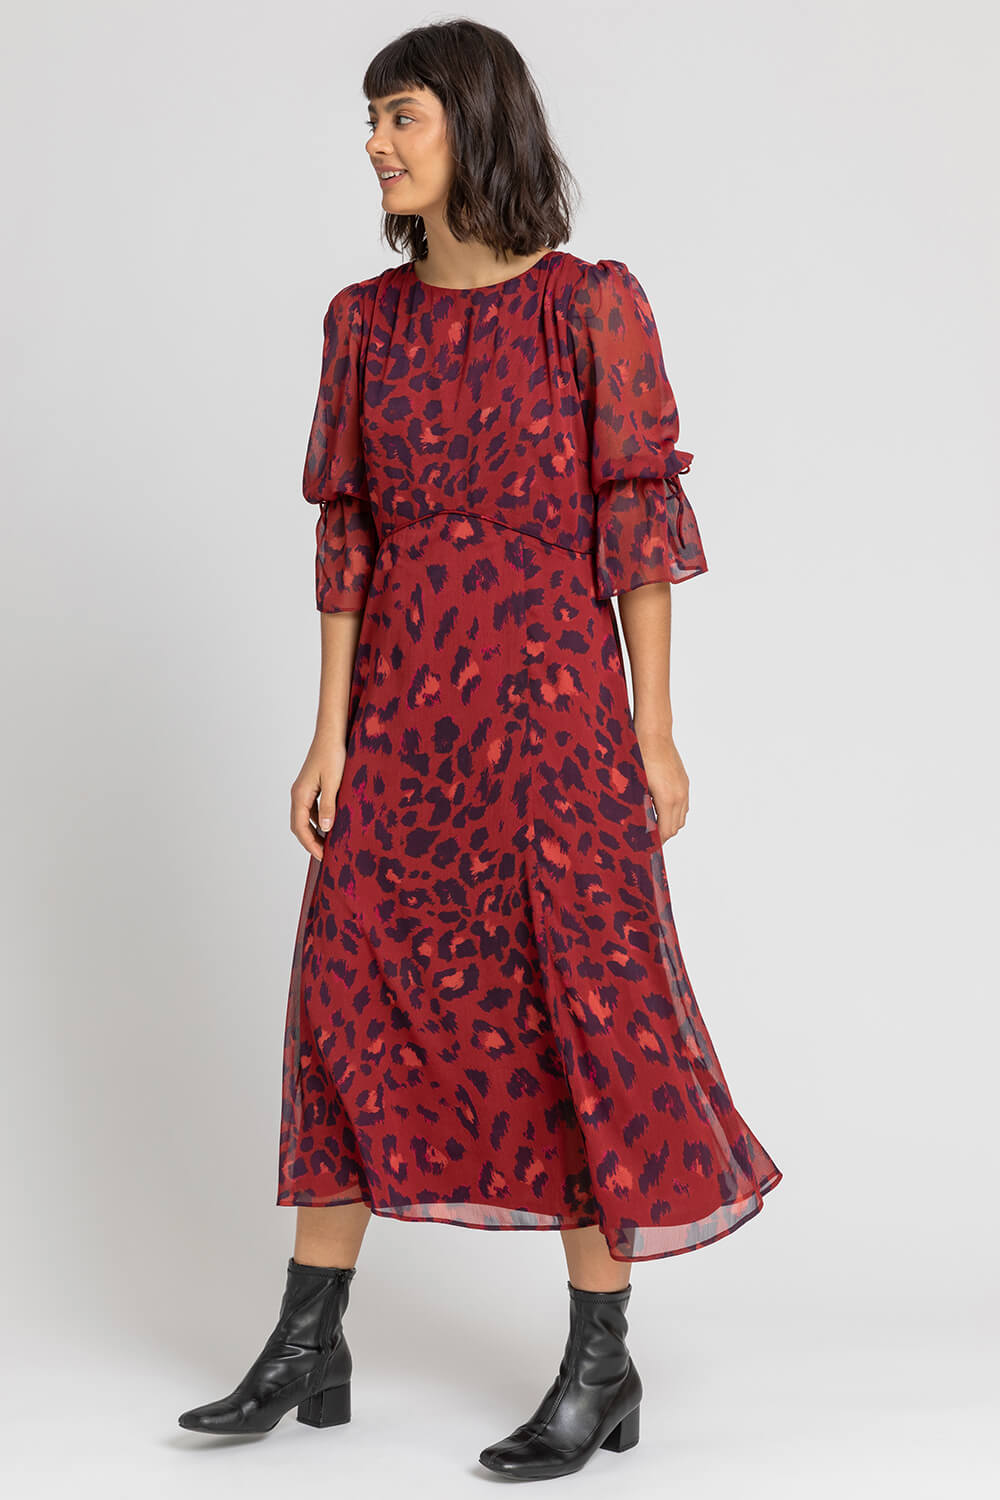 Rust Leopard Print Chiffon Maxi Dress, Image 3 of 5